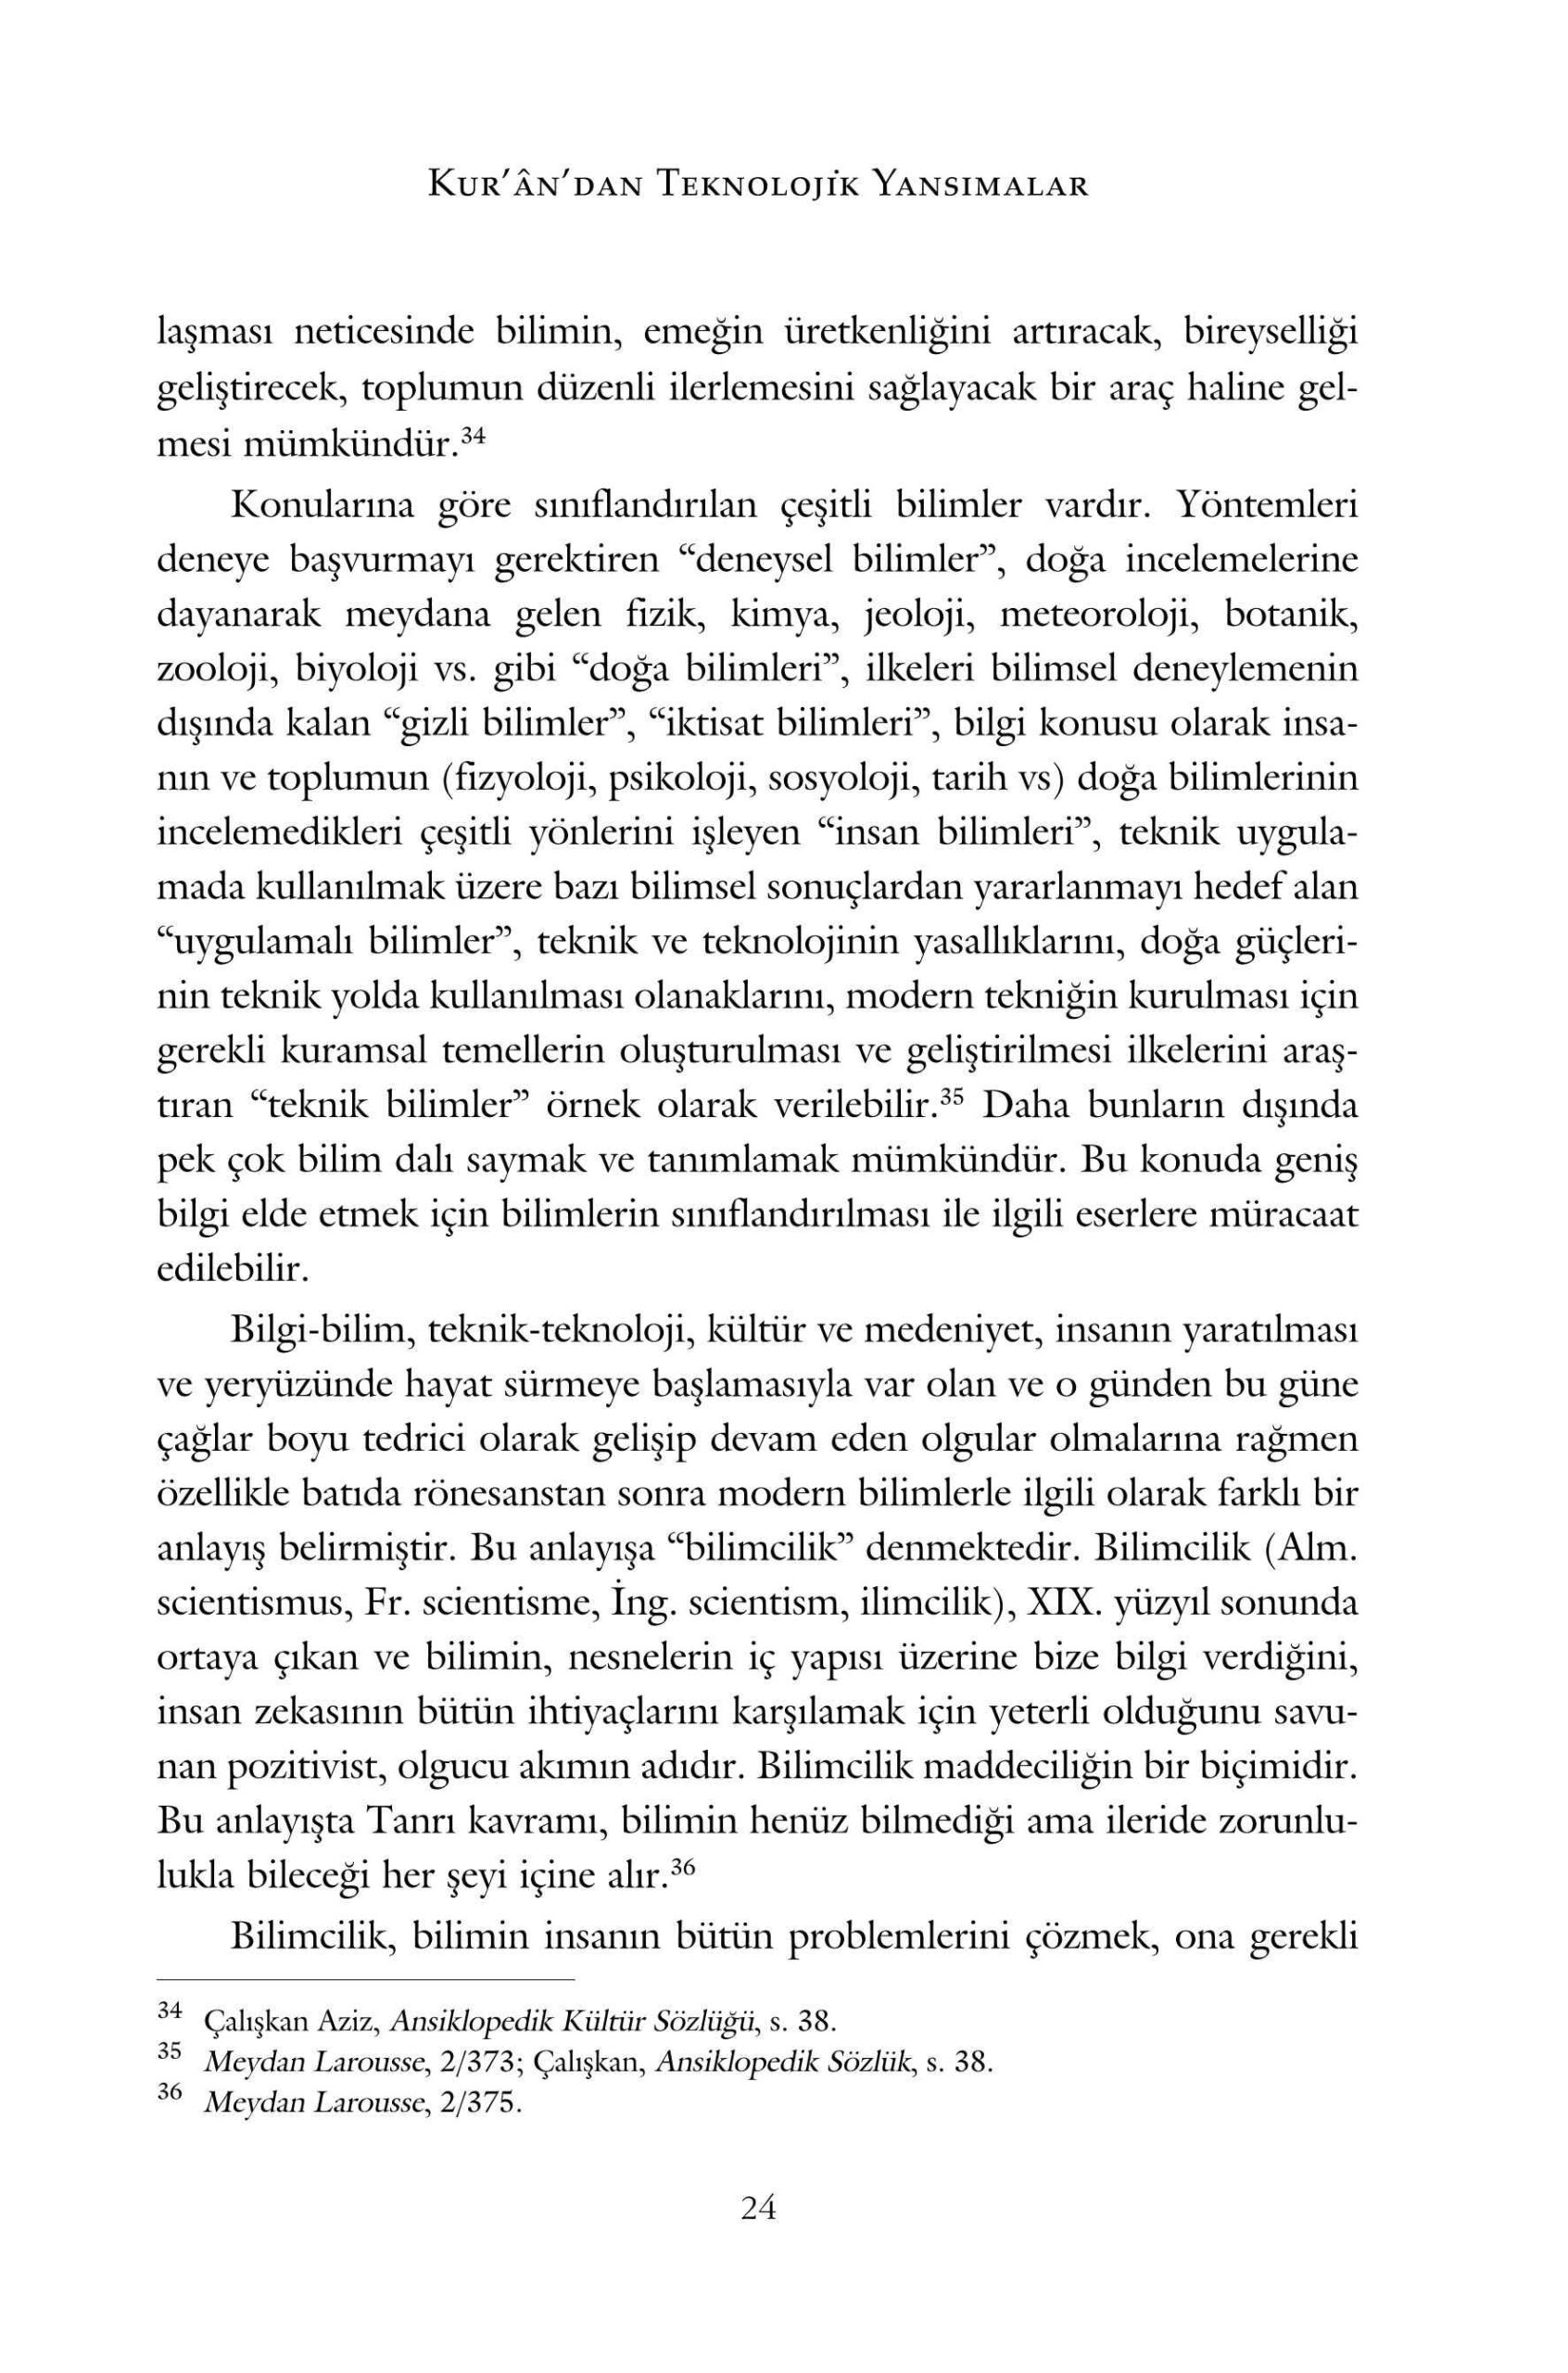 Omer Celik - Kurandan Teknolojik Yansimalar - IsikAkademiY.pdf, 240-Sayfa 